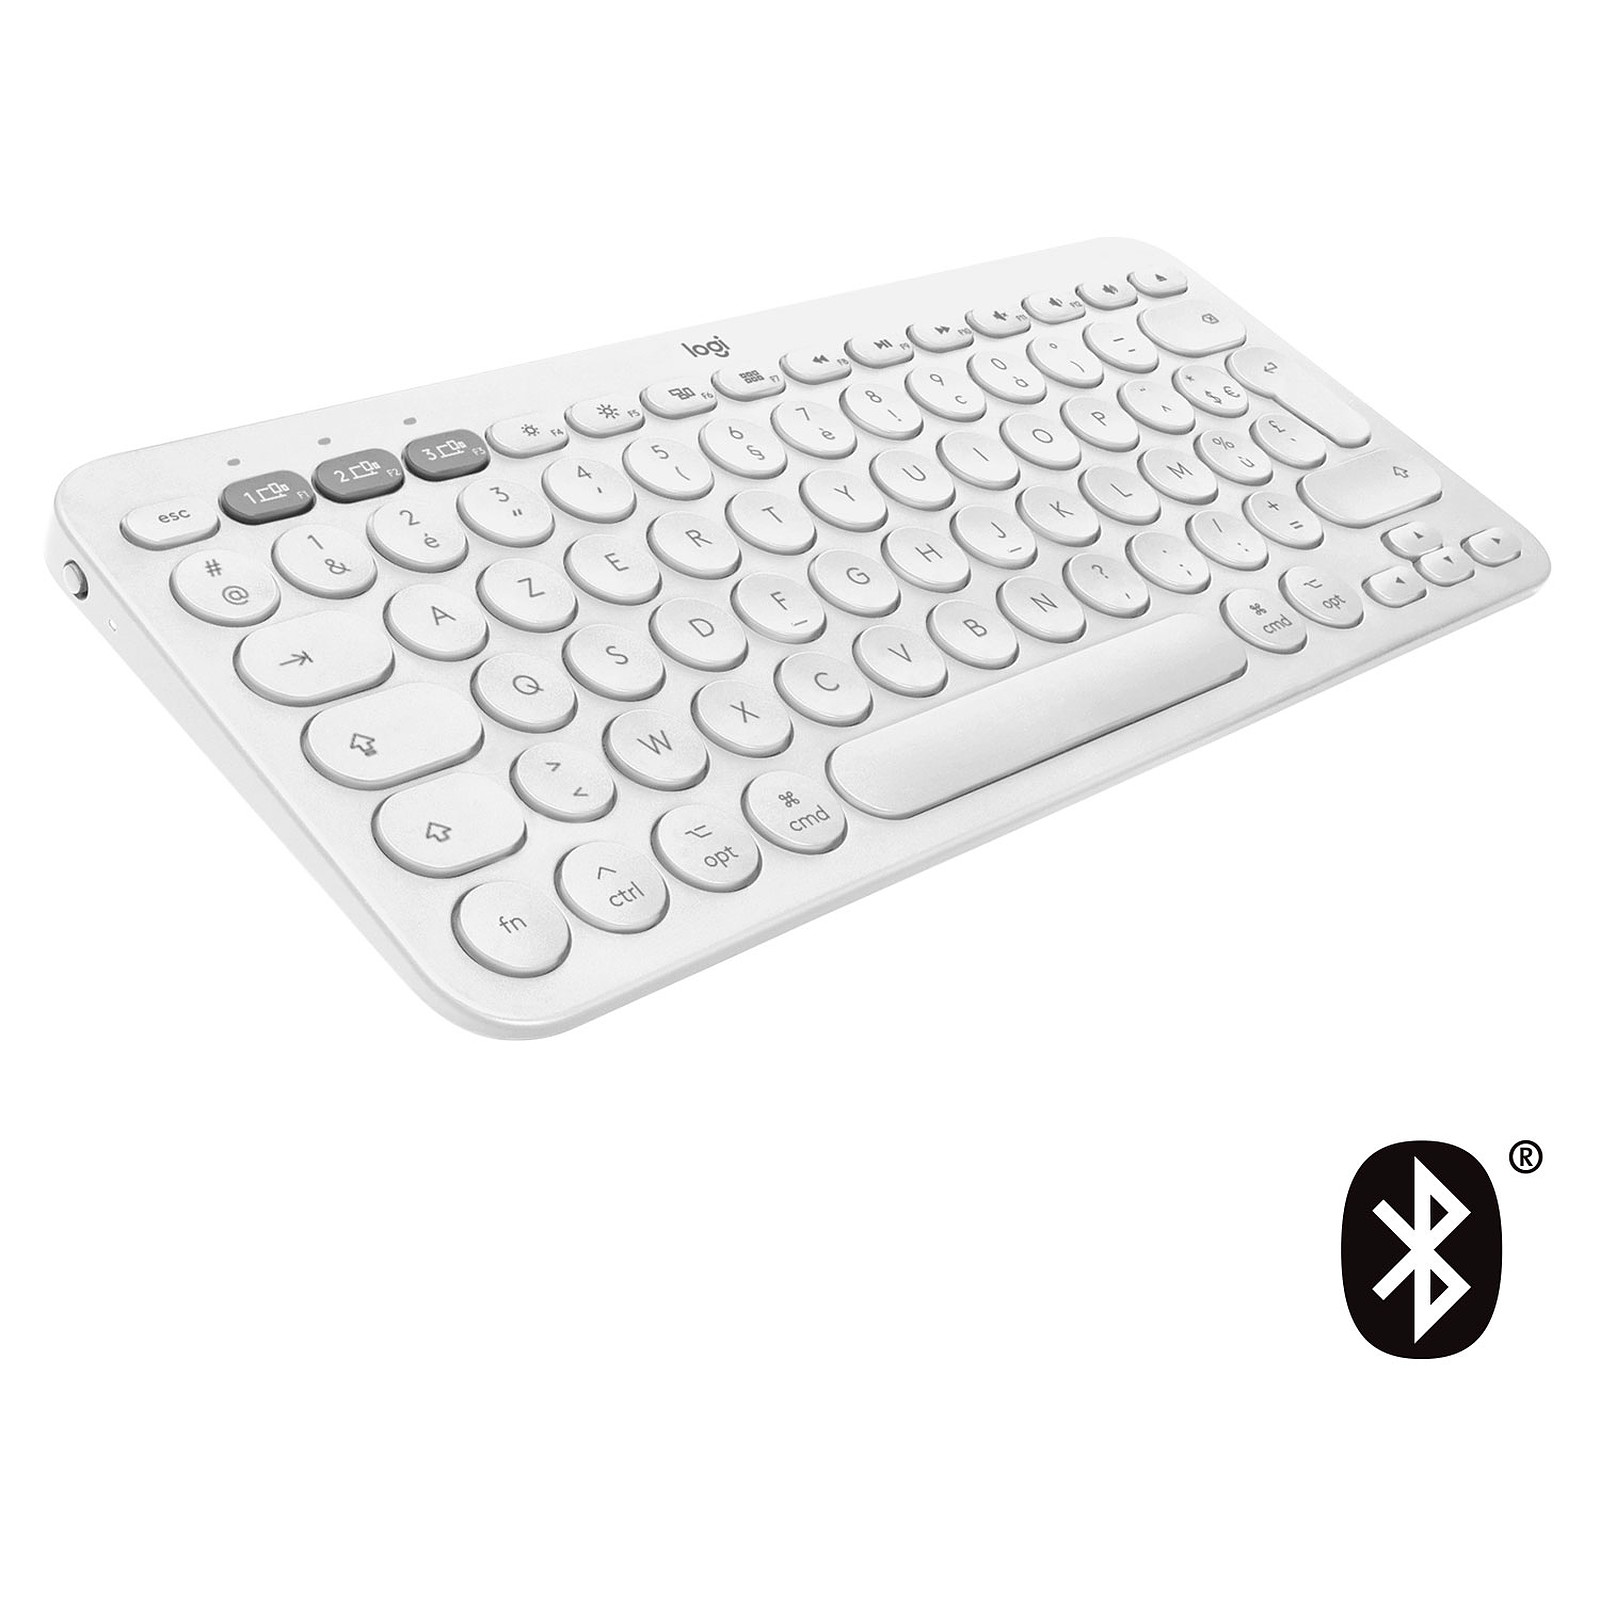 Logitech K380 Multi-Device Bluetooth Keyboard for Mac (Blanc) - Clavier tablette Logitech